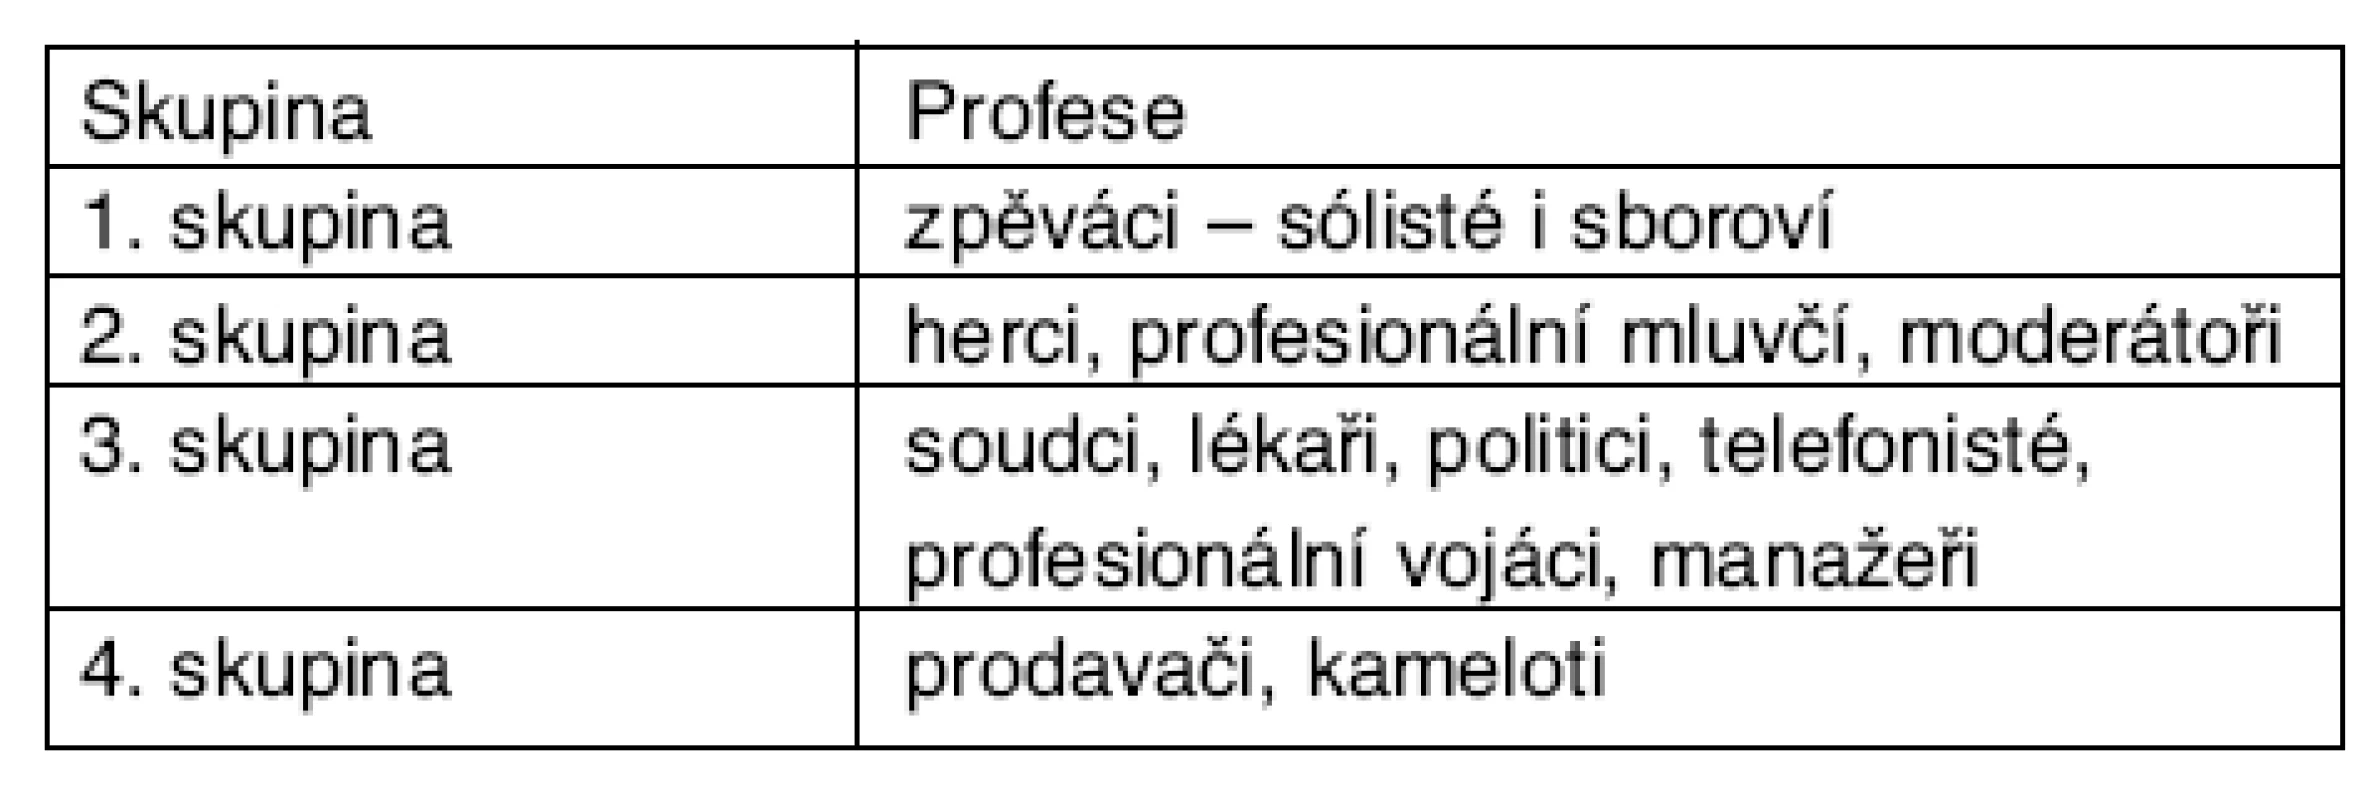 Rozdělení hlasových profesionálů podle Unie evropských foniatrů [11]